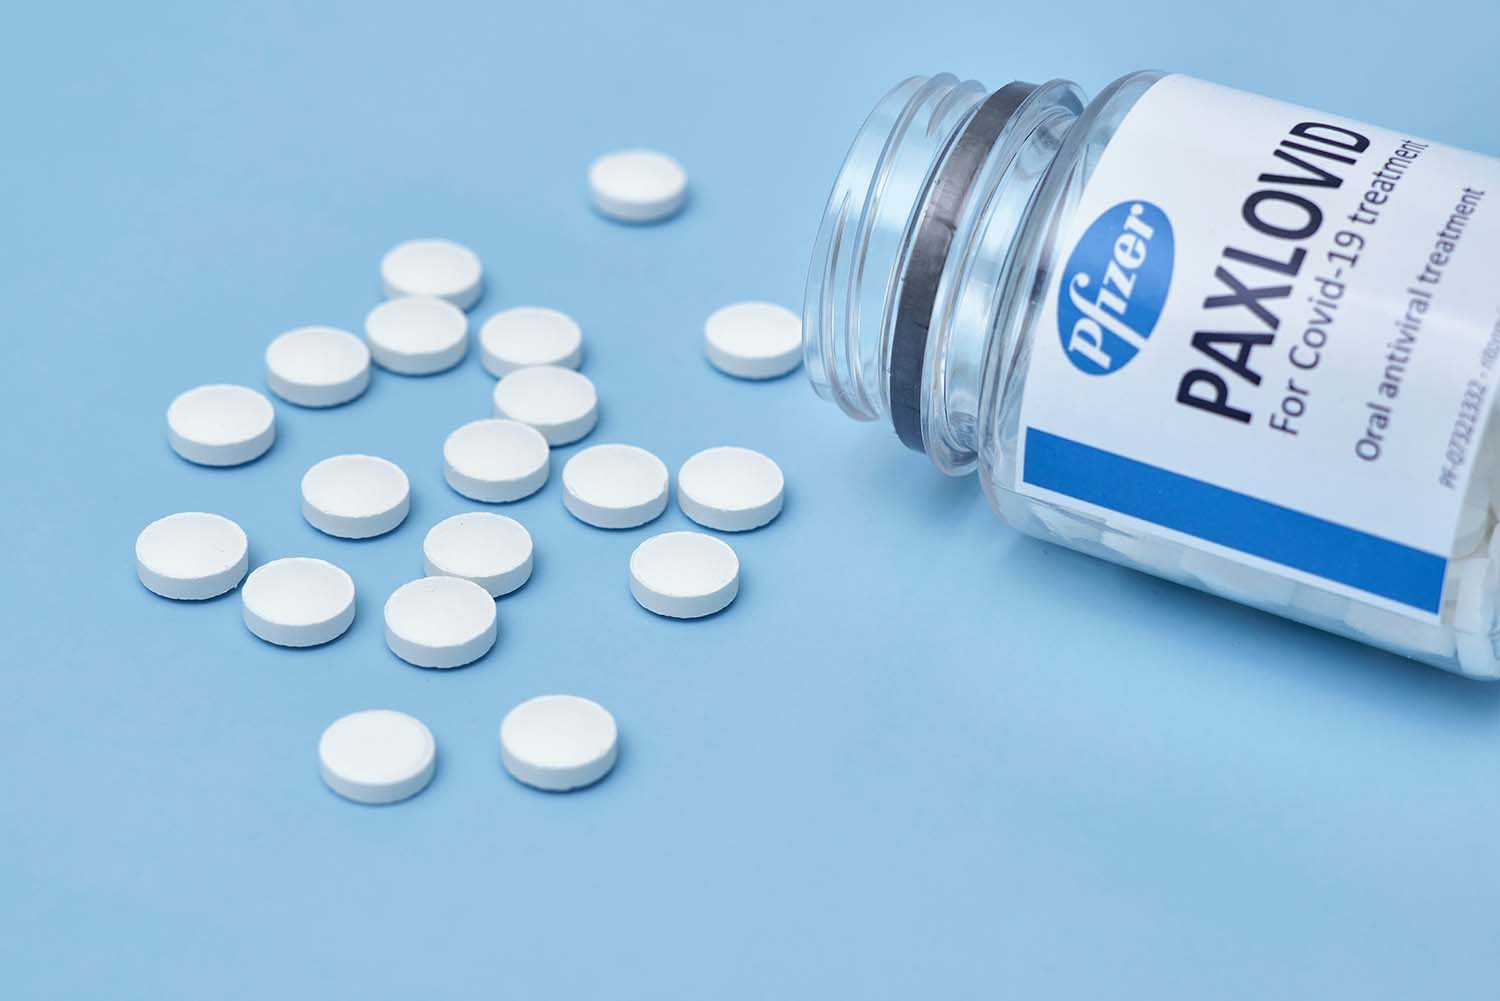 Hausärztinnen und Hausärzte können seit 18. August bis zu fünf Einheiten des antiviralen Medikaments Paxlovid® in ihren Praxen vorrätig halten und direkt an die Patienten abgeben. Abgerechnet wird über eine Pseudoziffer.  